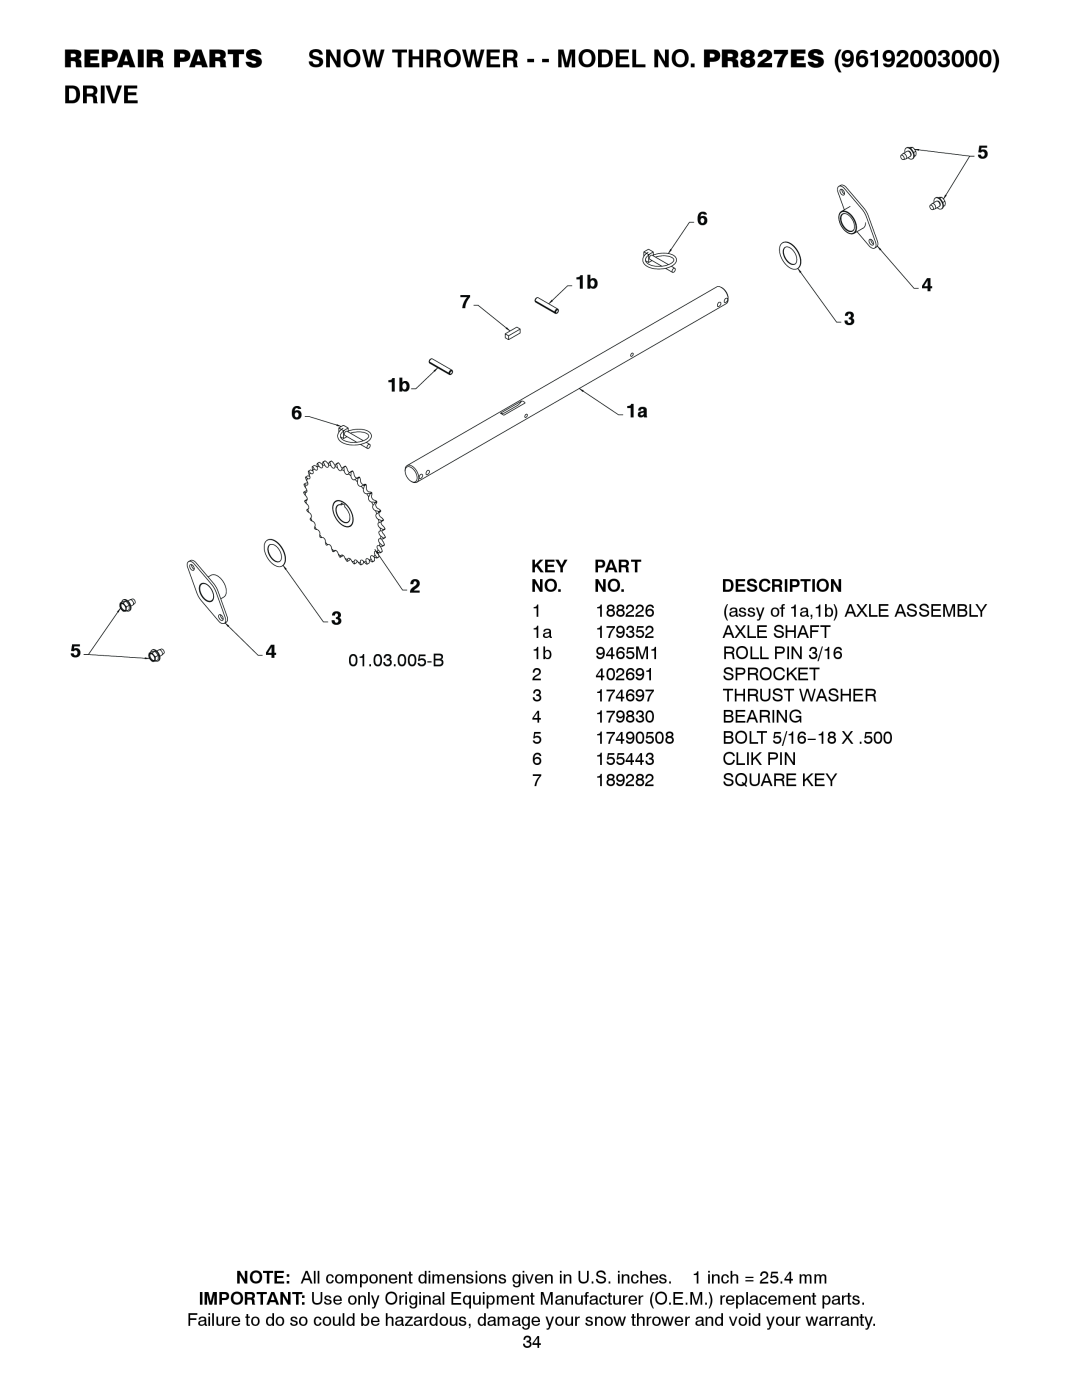 Poulan owner manual REPAIR PARTS SNOW THROWER - - MODEL NO. PR827ES DRIVE, Part, Description 